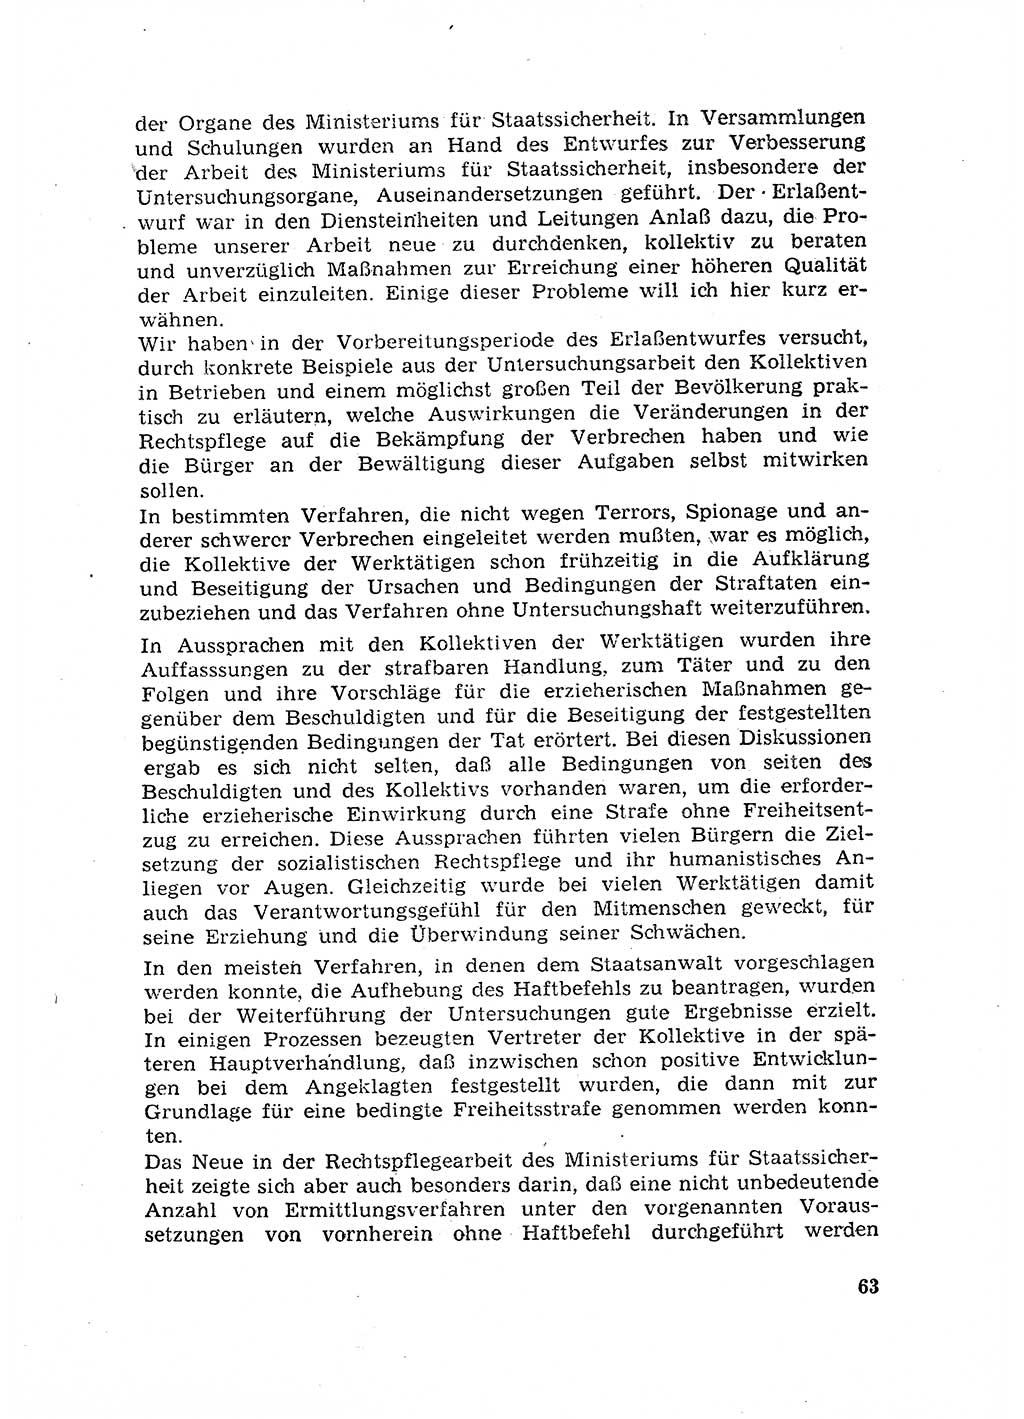 Rechtspflegeerlaß [Deutsche Demokratische Republik (DDR)] 1963, Seite 63 (R.-Pfl.-Erl. DDR 1963, S. 63)